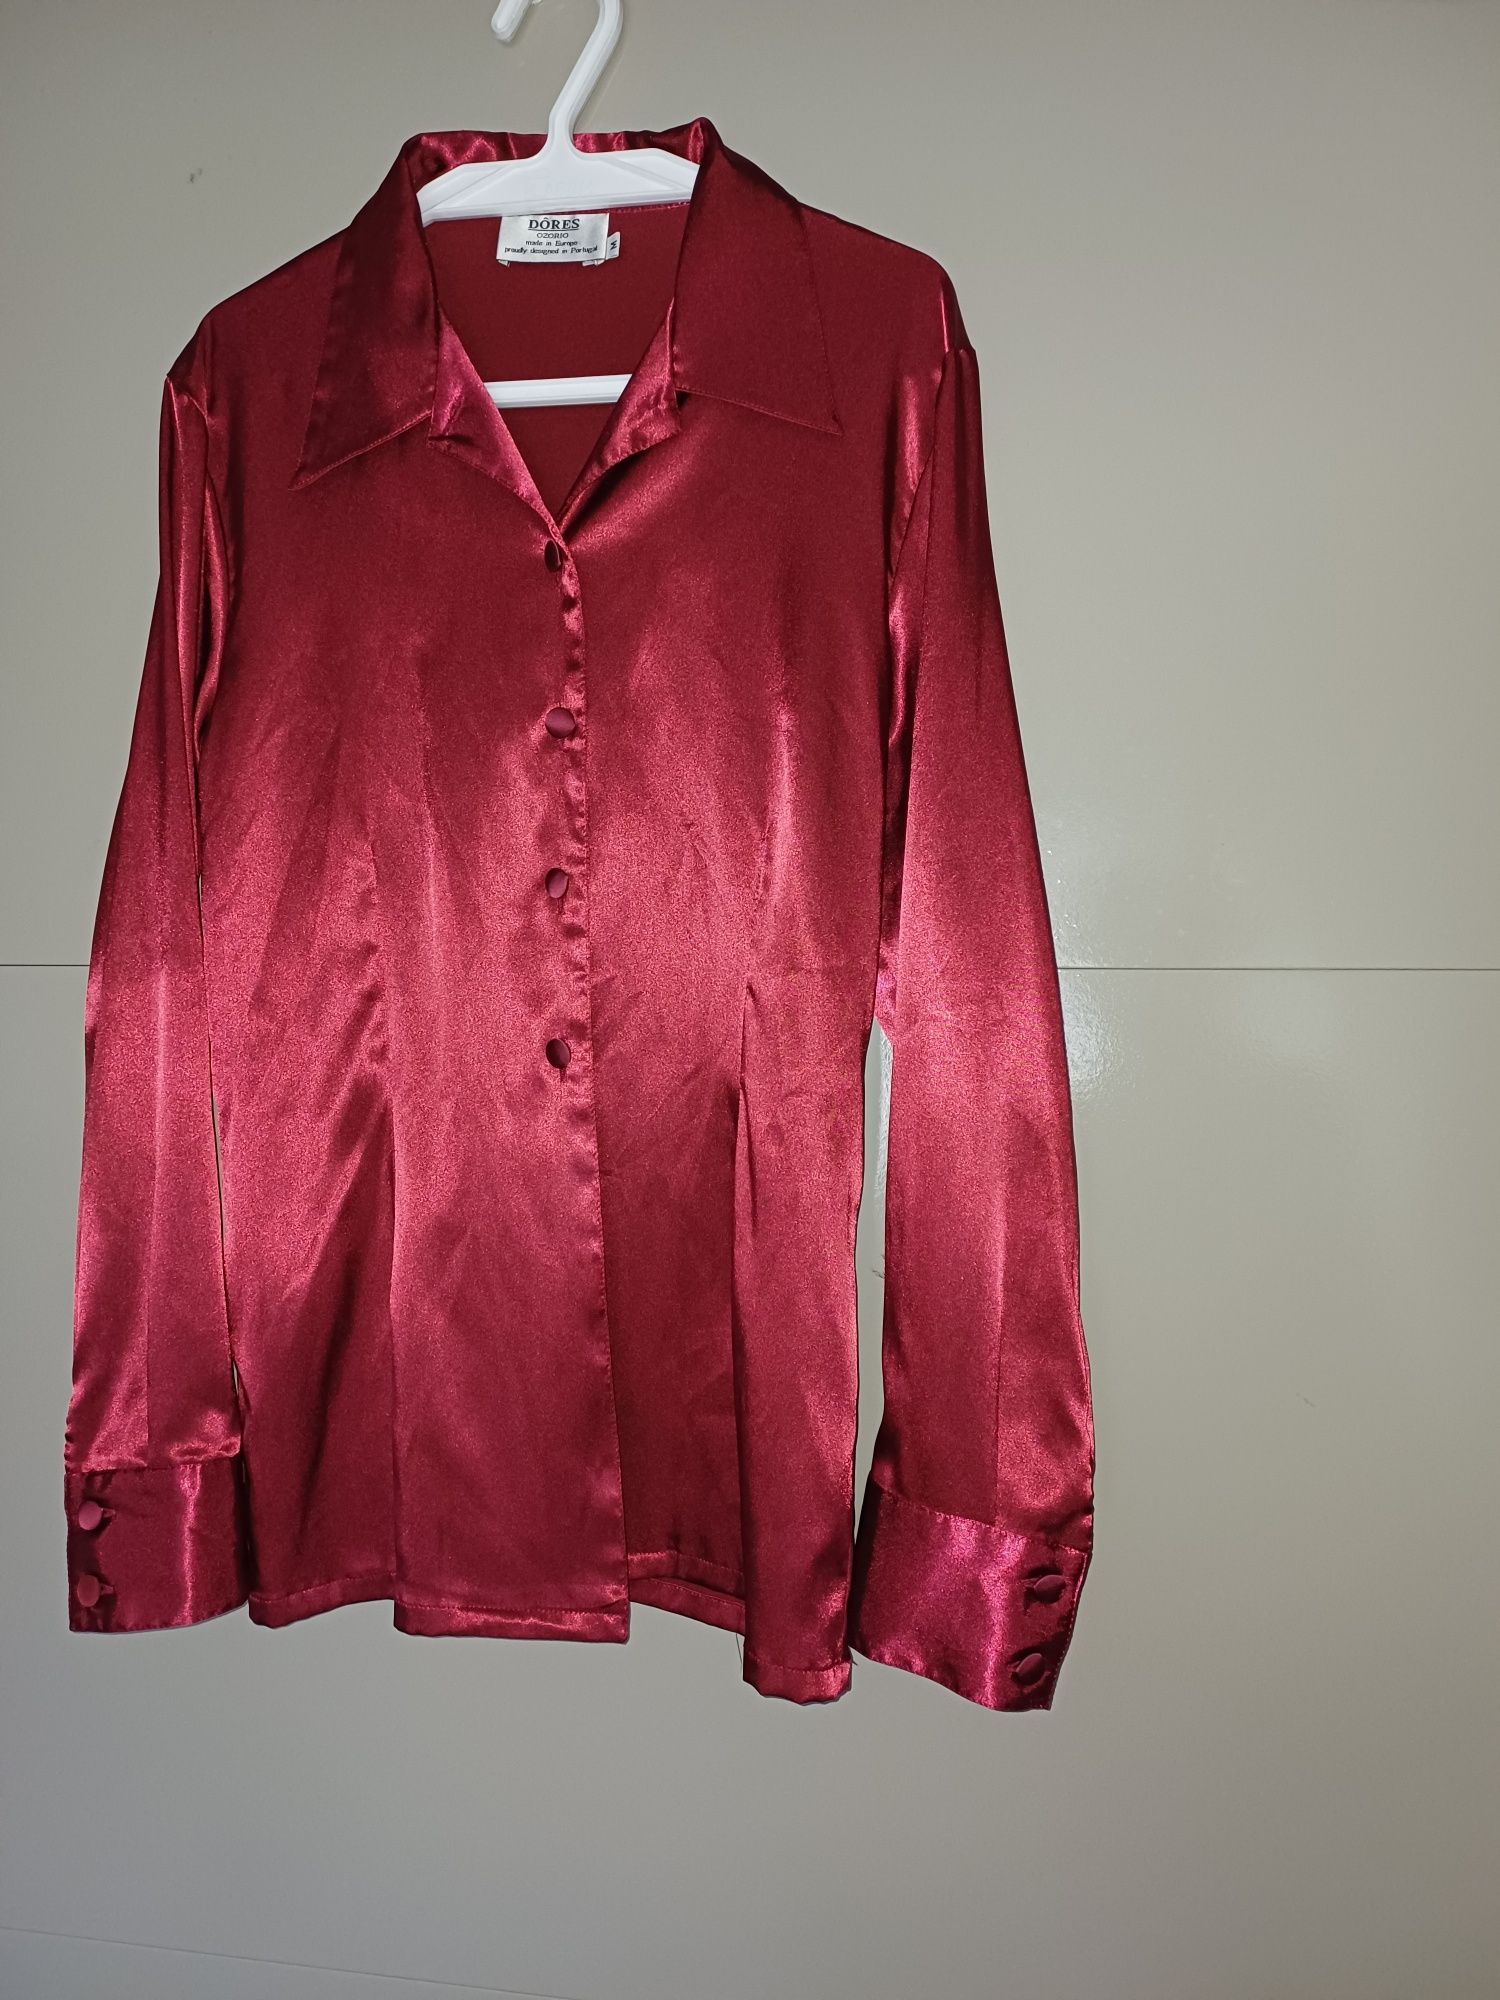 Blusa cor vinho, manga comprida, tipo cetim com elasticidade, cintada